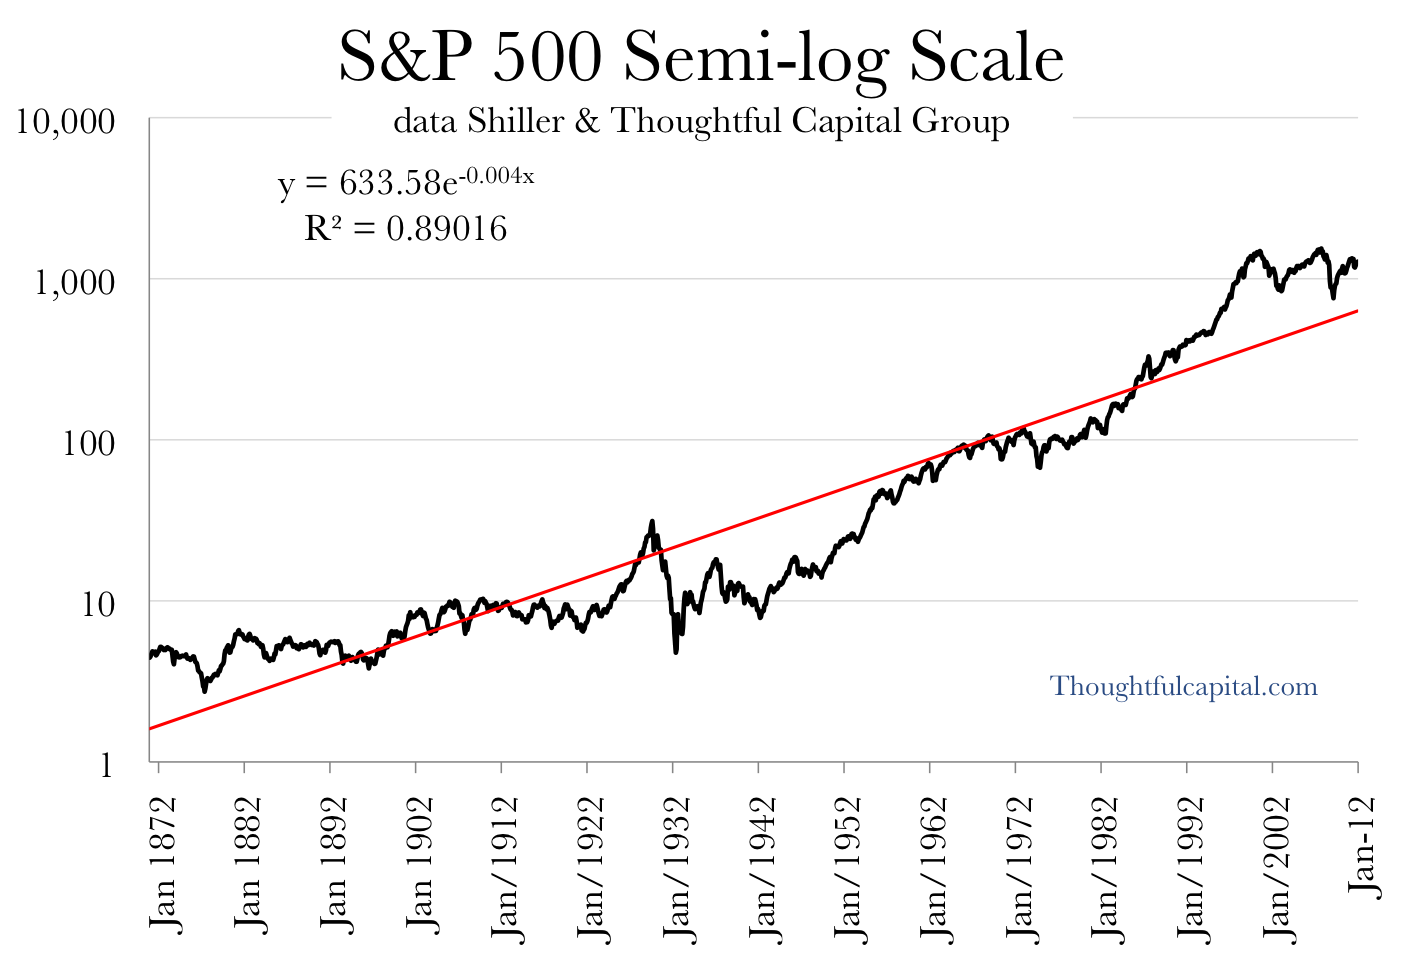 S&P 500 Semi-log scale 1871-2011